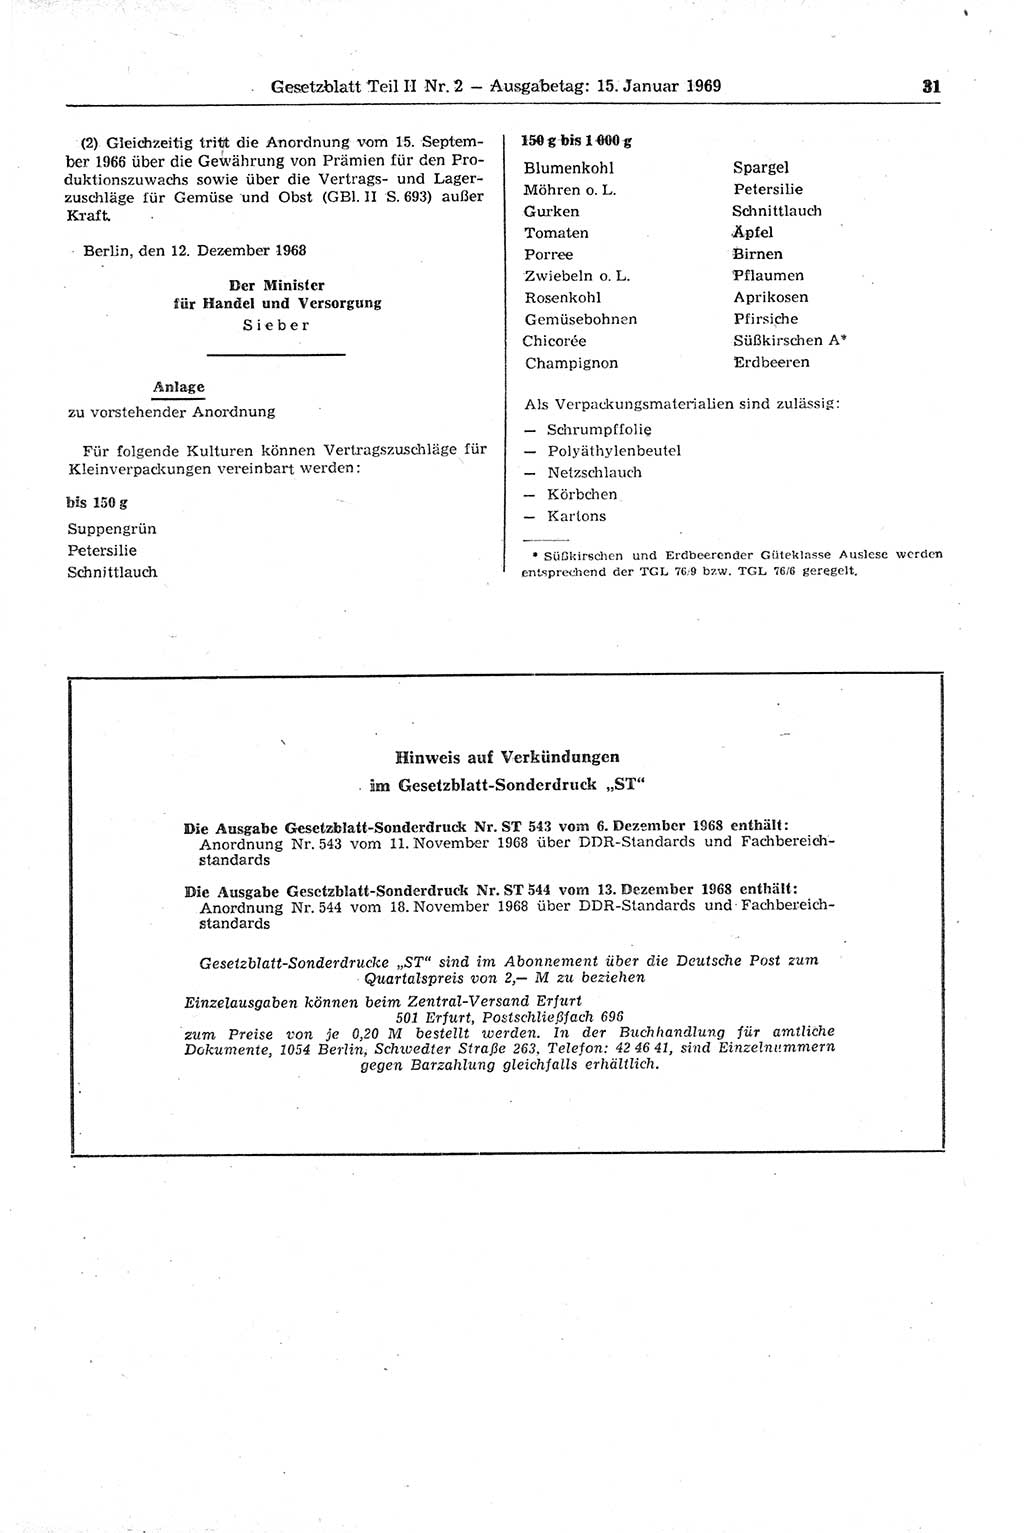 Gesetzblatt (GBl.) der Deutschen Demokratischen Republik (DDR) Teil ⅠⅠ 1969, Seite 31 (GBl. DDR ⅠⅠ 1969, S. 31)